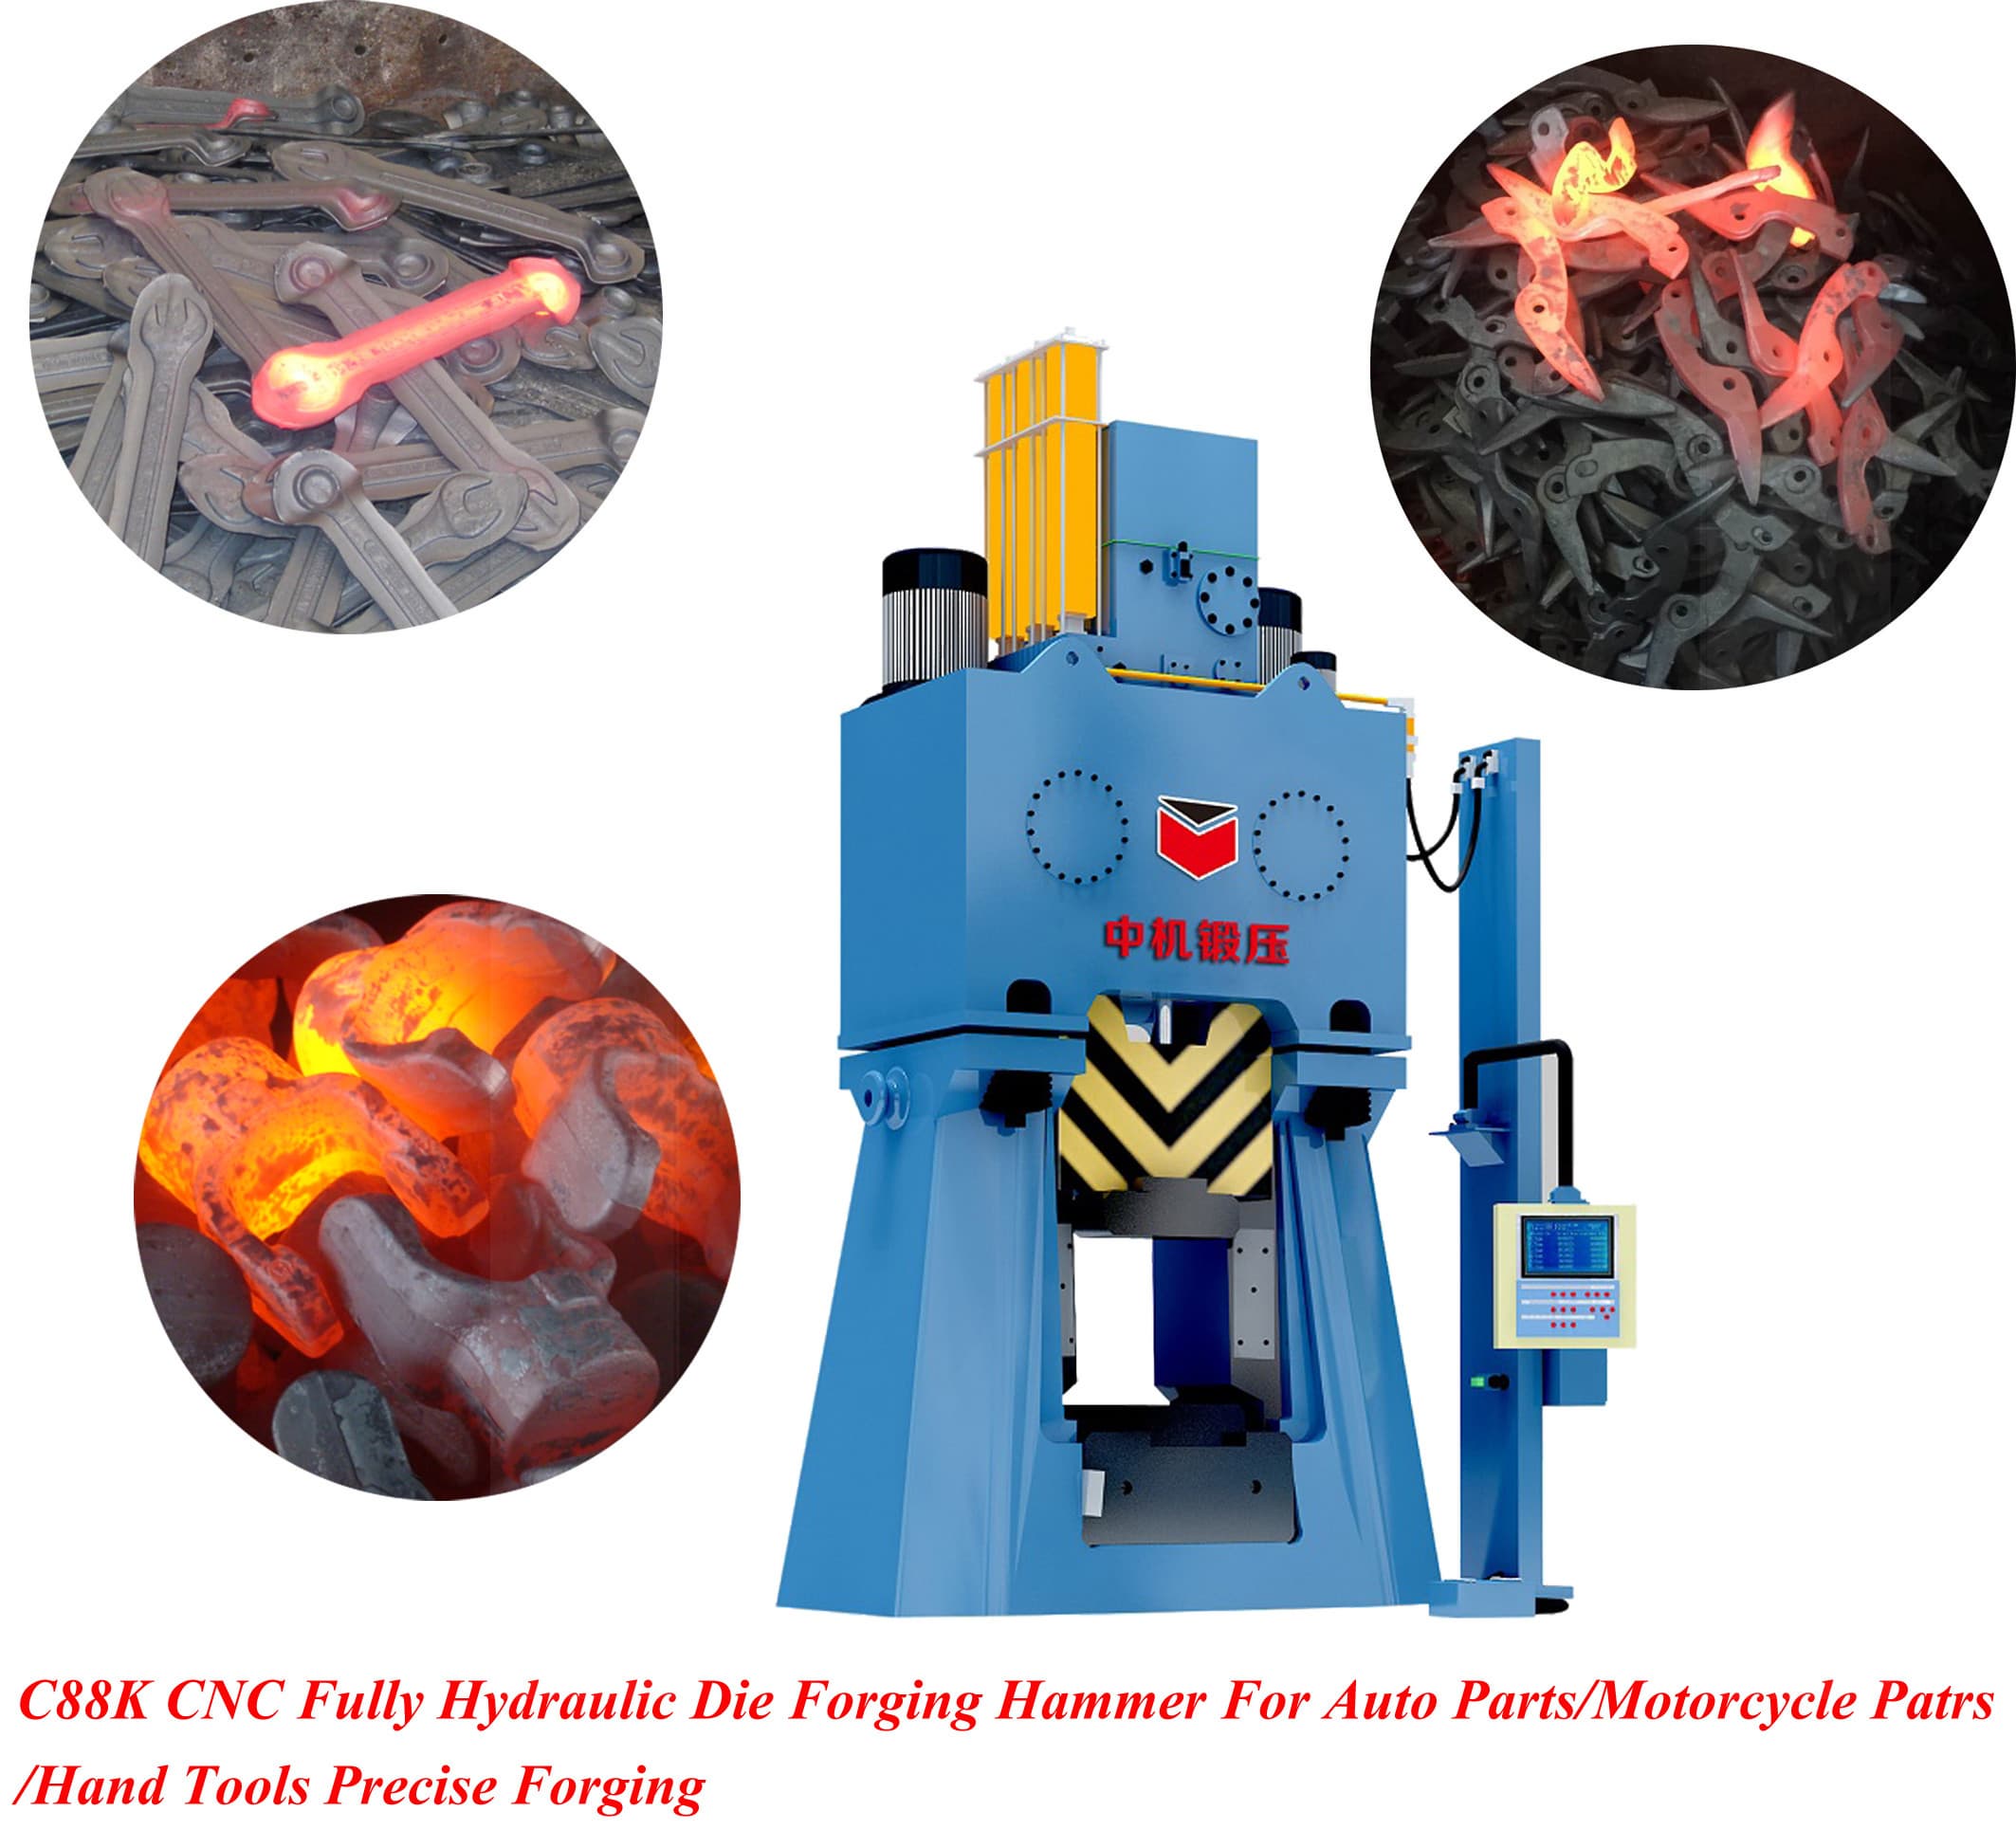 C88K CNC Fully Hydraulic Die Forging Hammer